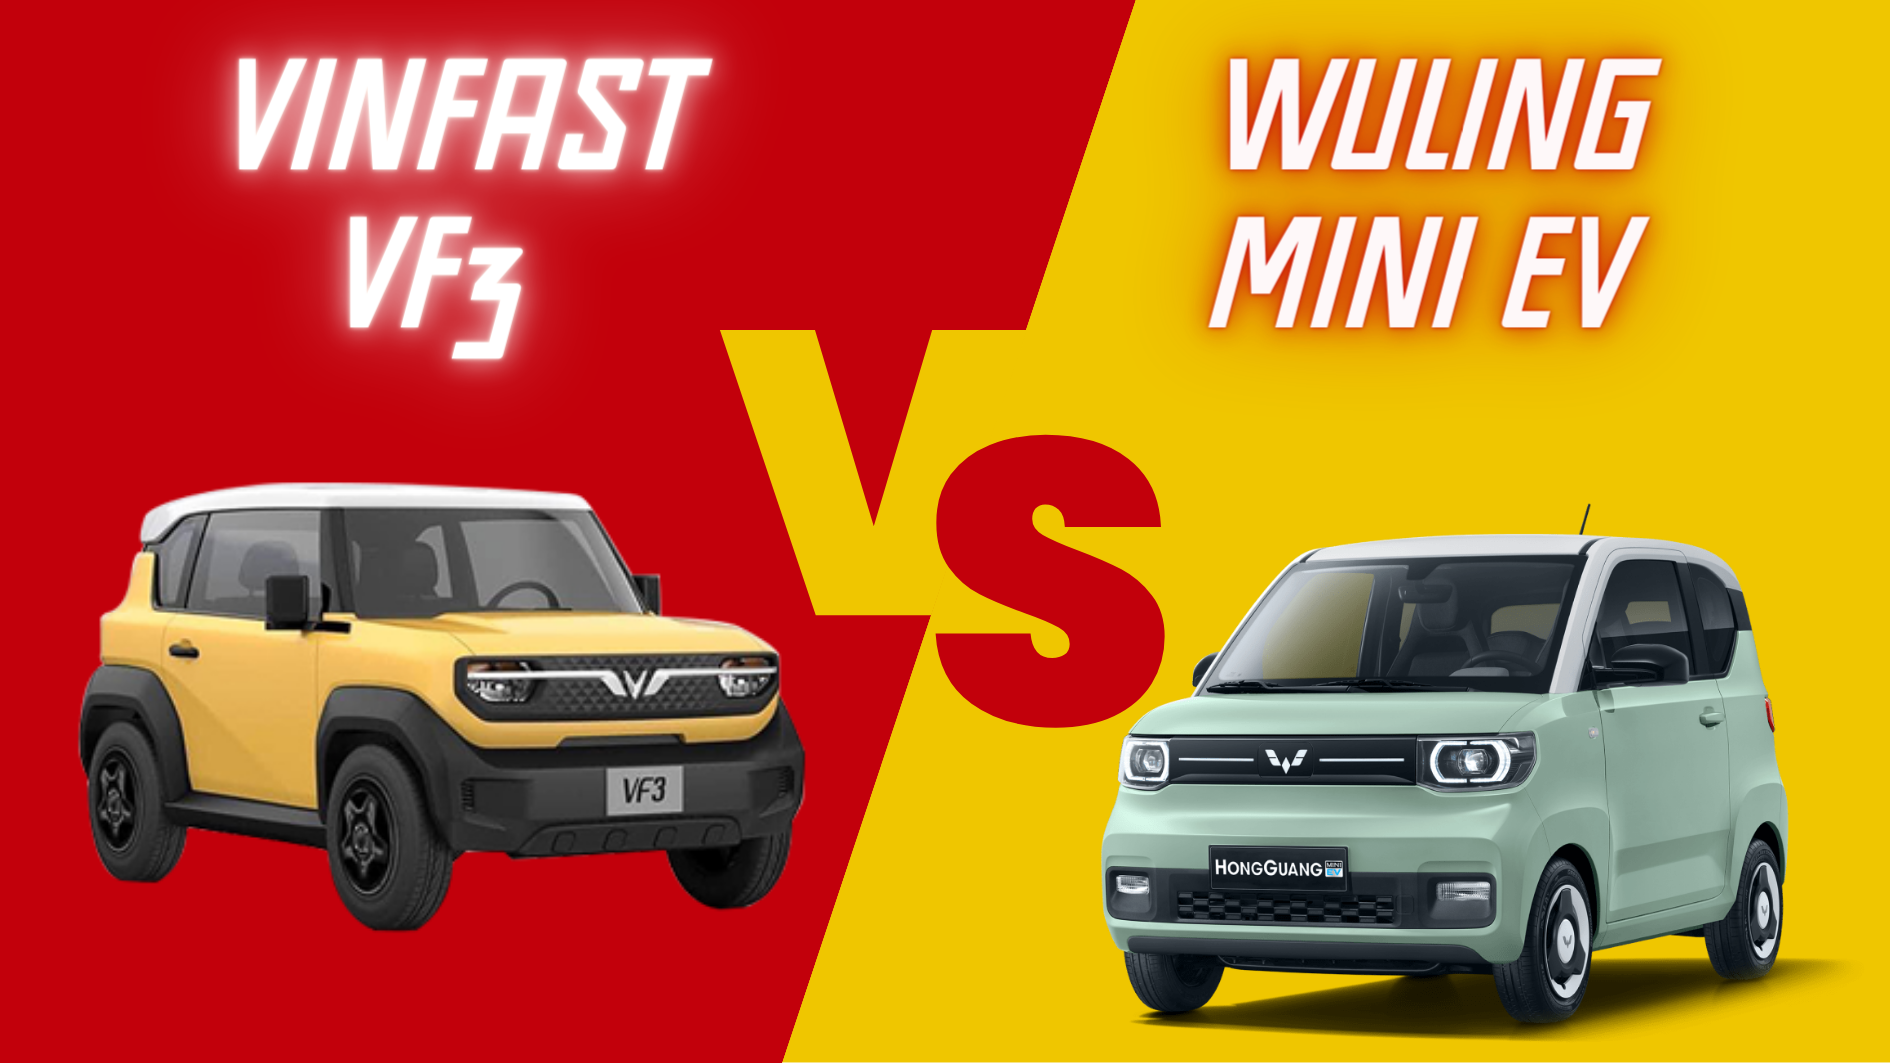 Wuling Mini EV gặp khó trước giá xe VinFast VF3?- Ảnh 1.